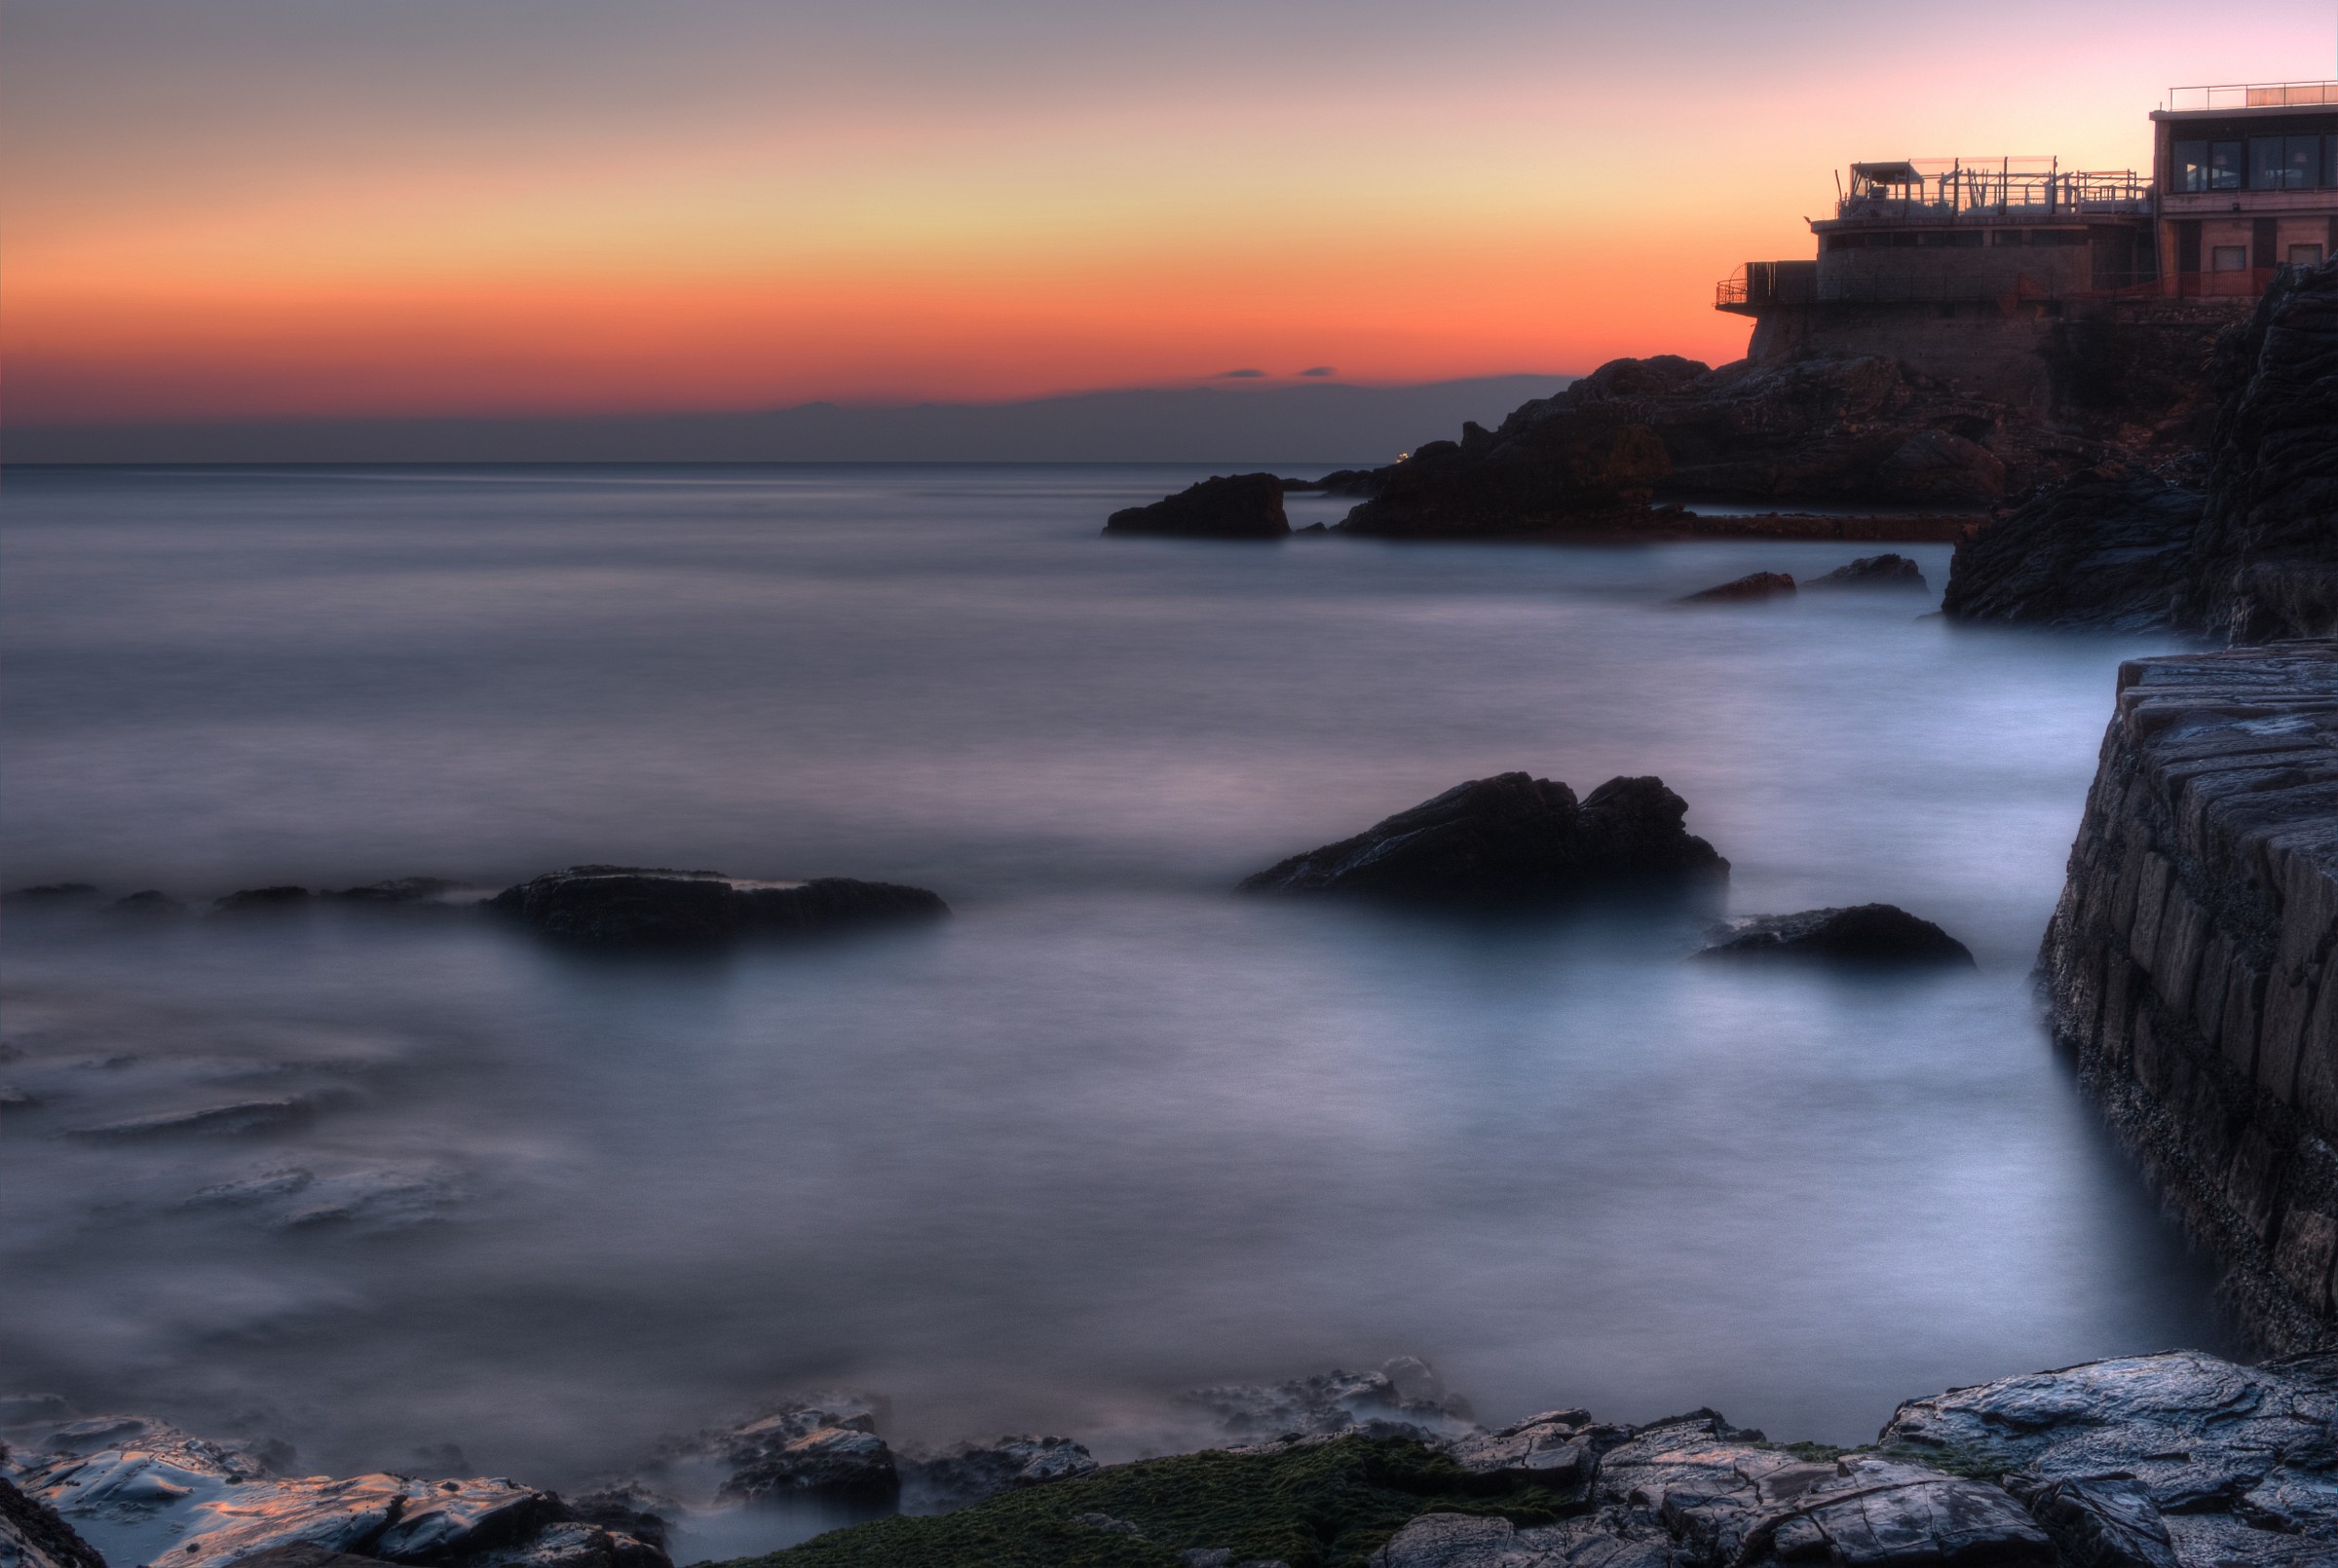 dopo un bel tramonto,la pace in riva al mare.....